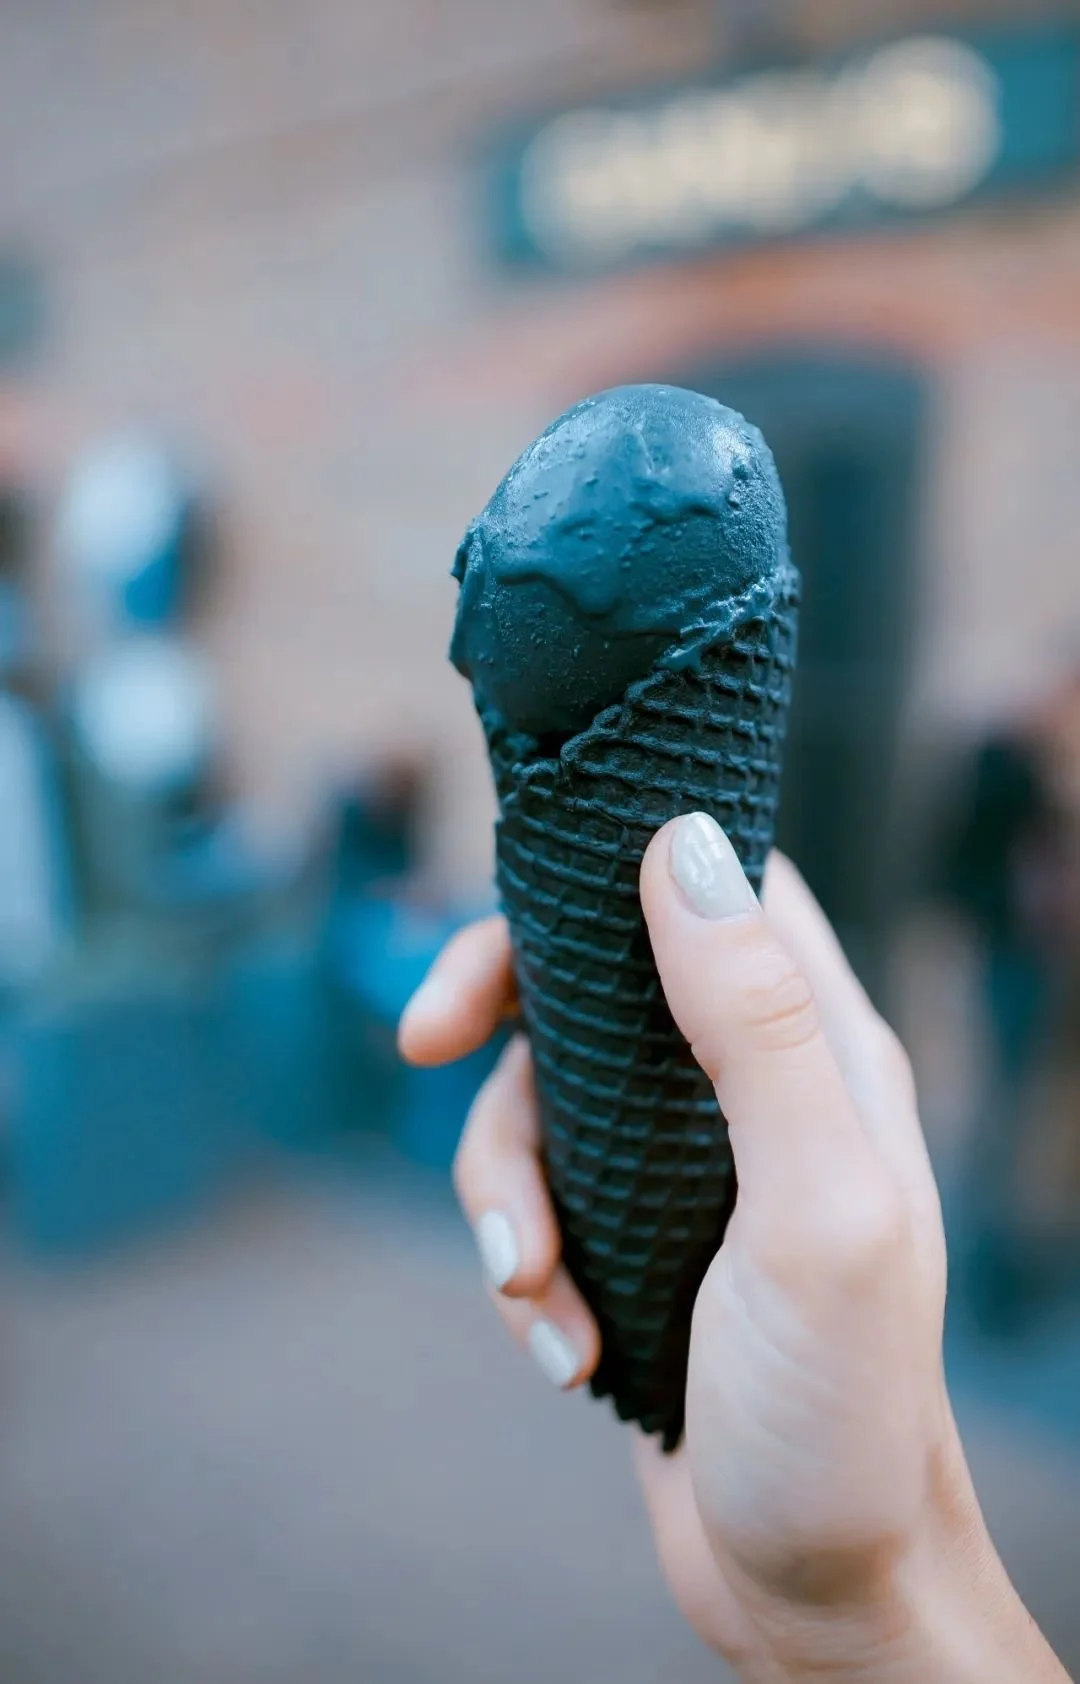 黑色冰激凌，一些国家已禁售。/unsplash